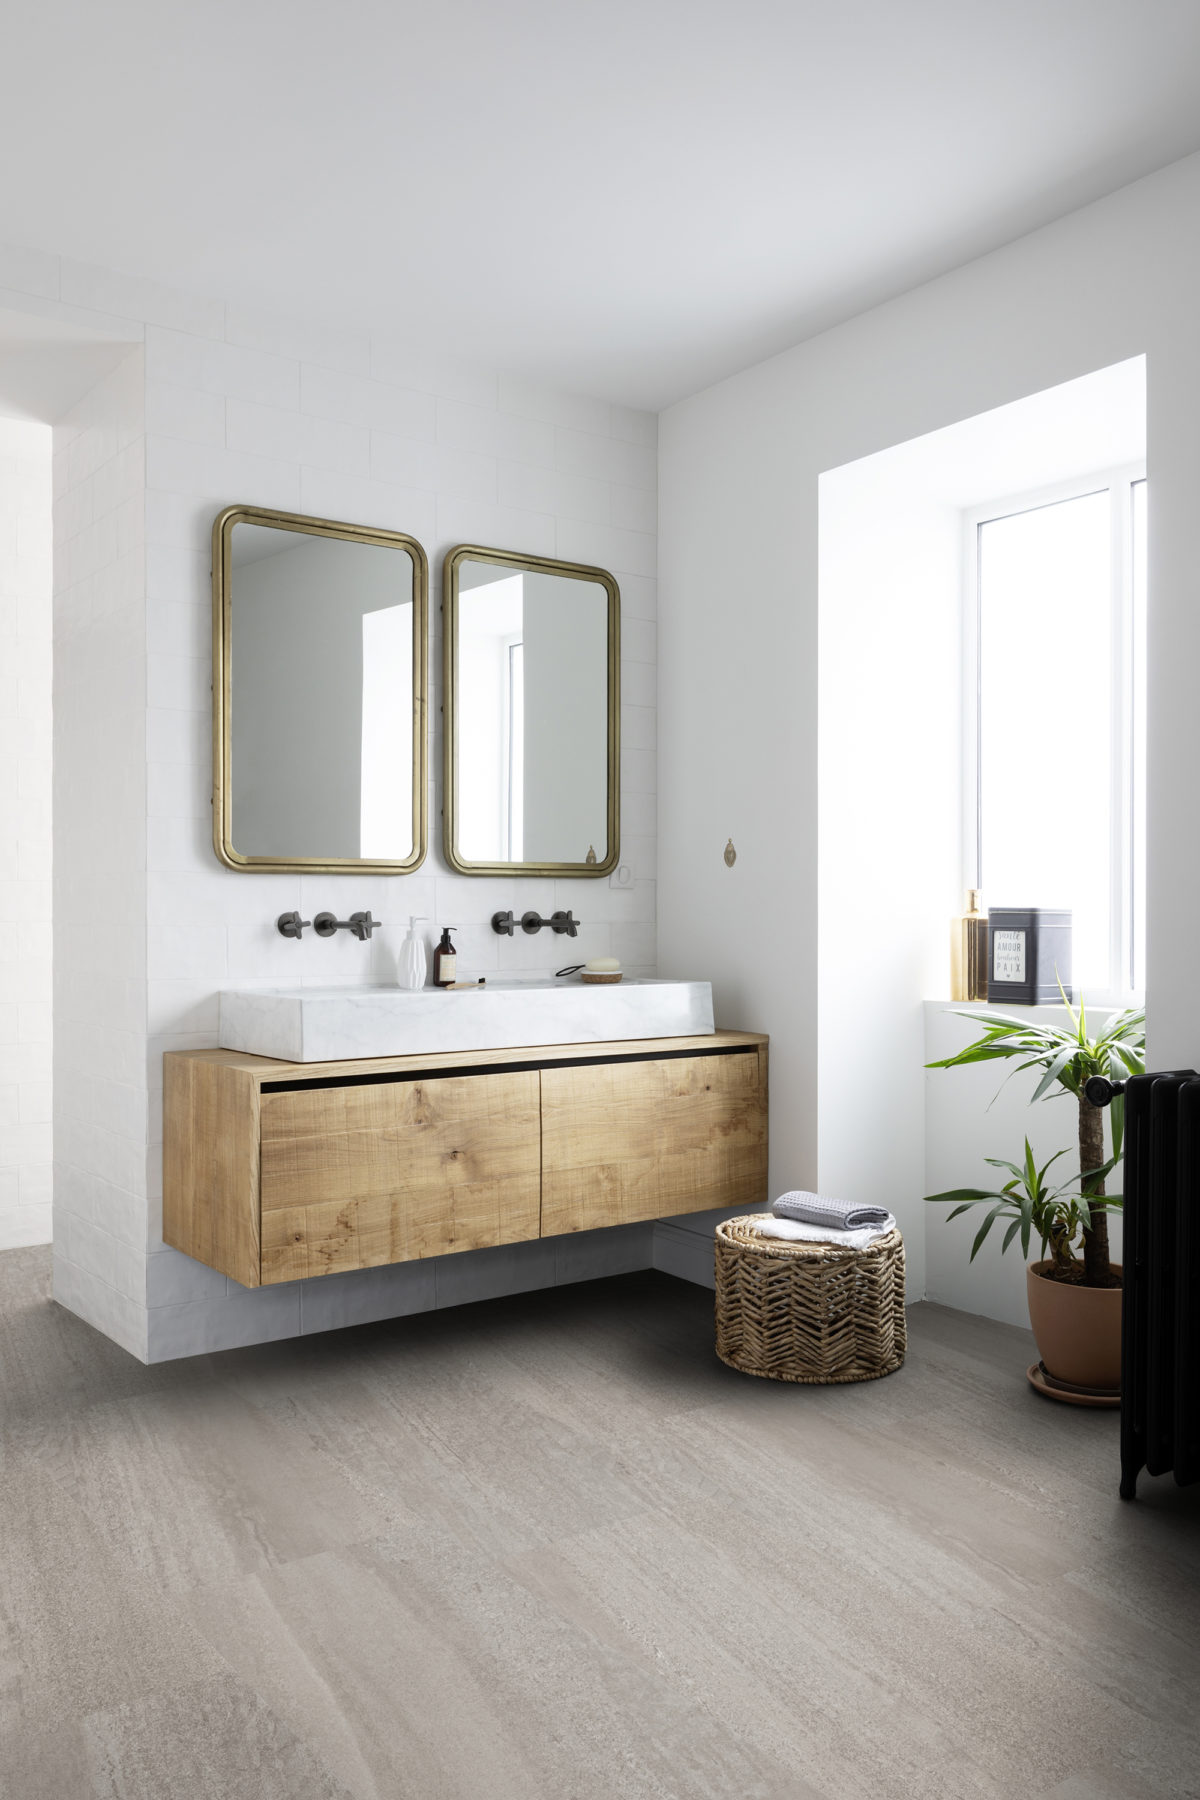 une salle de bain luineuse : murs blancs, meuble en bois qui supporte deux vasques blanches, miroirs jumaux anciens avec cadre couleur or. Au sol un joli sol vinyle Gerflor